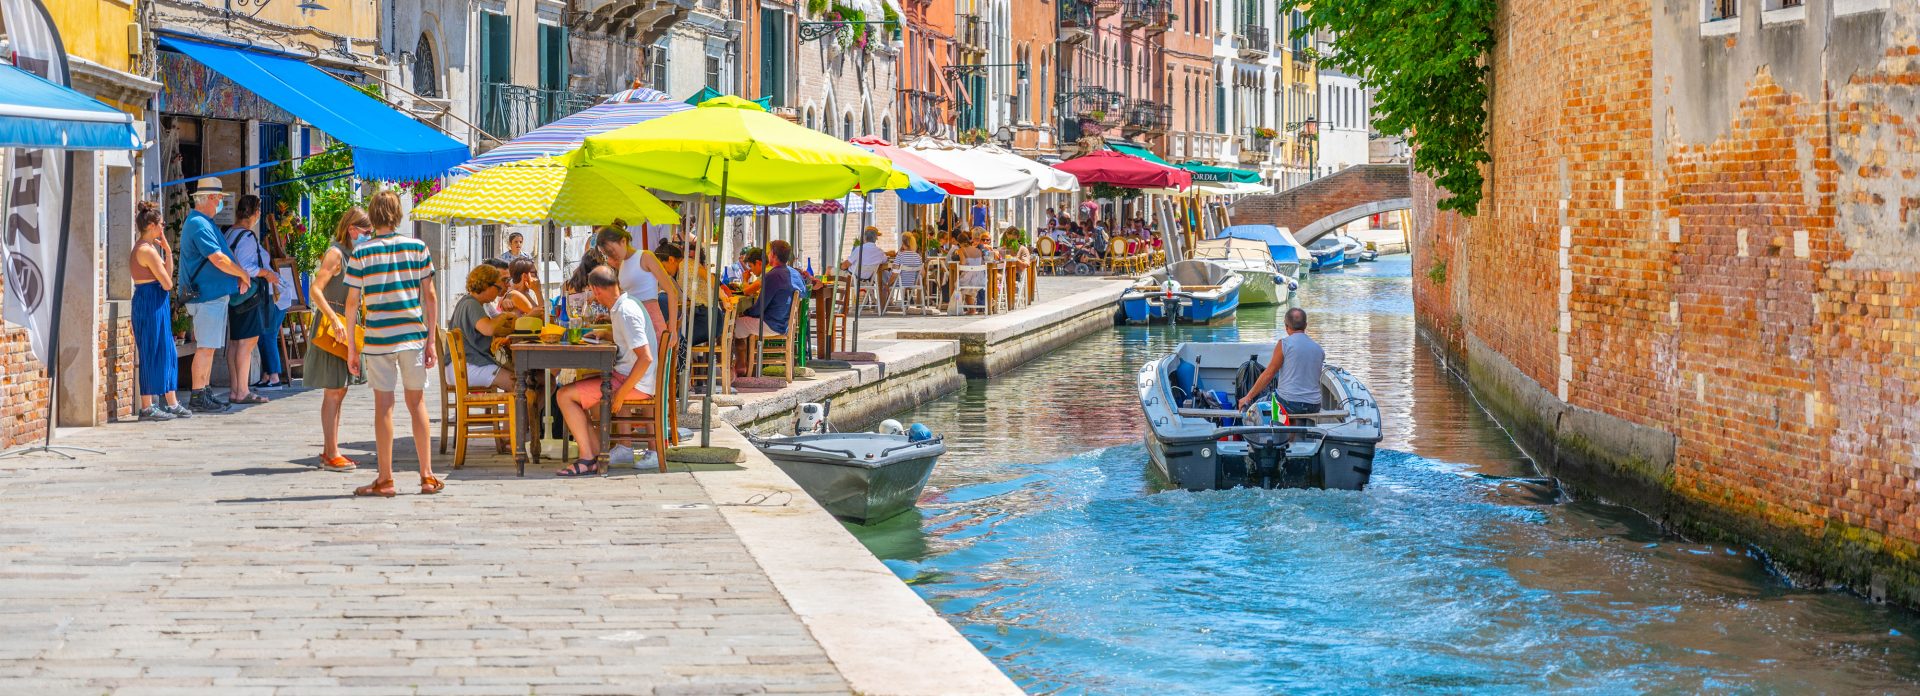 Rekommenderade områden och stadsdelar i Venedig